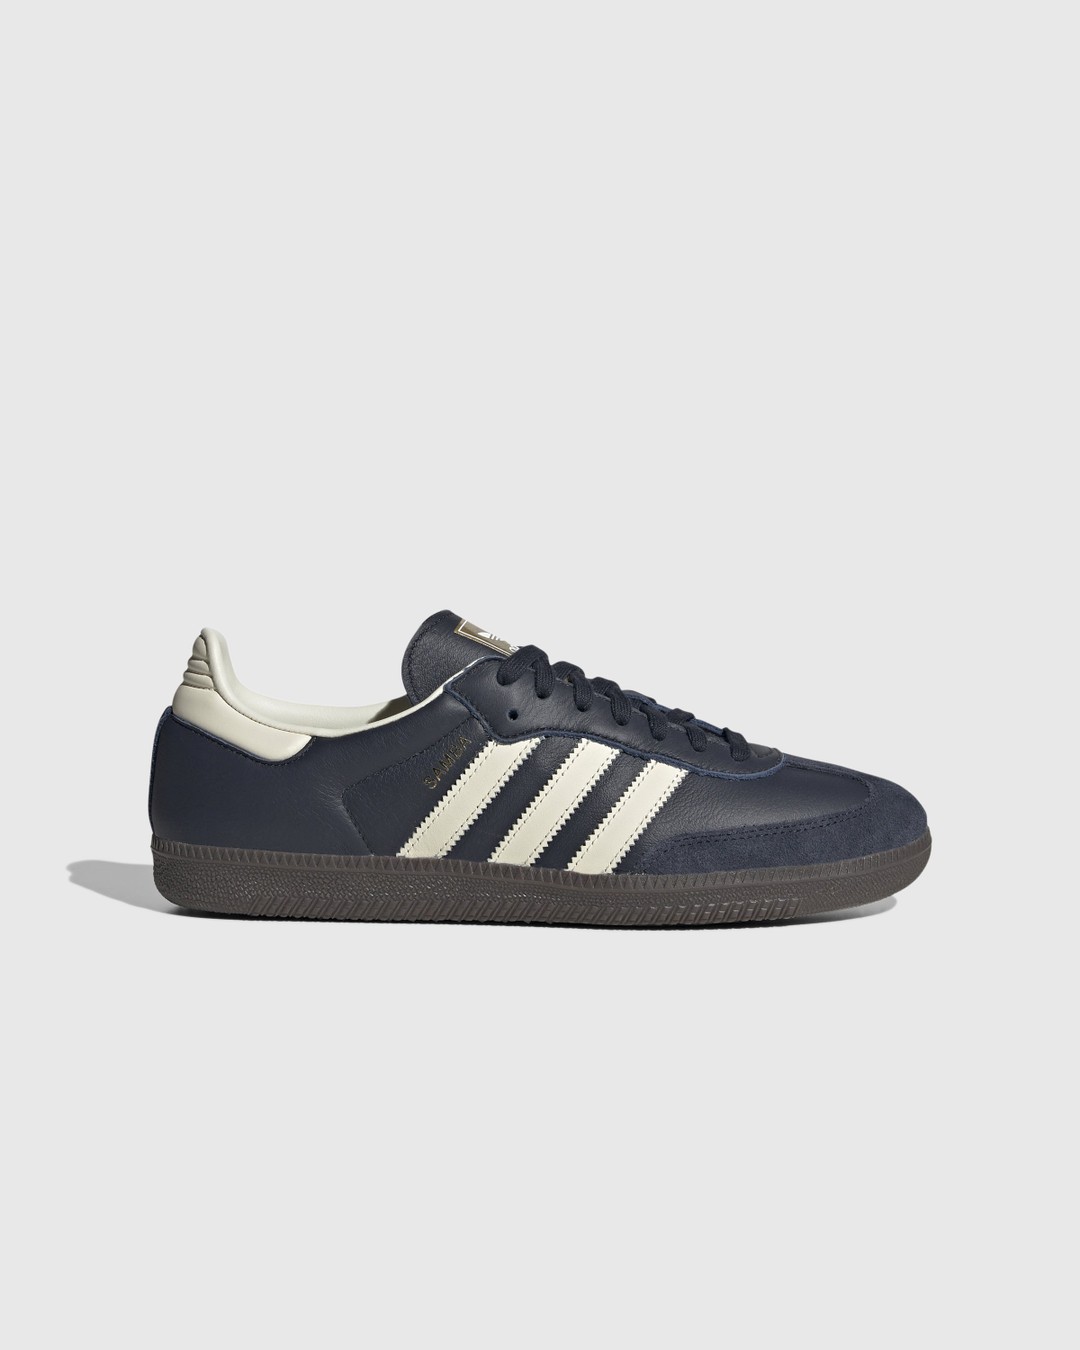 Adidas – Samba OG Navy/White  - Sneakers - Blue - Image 1